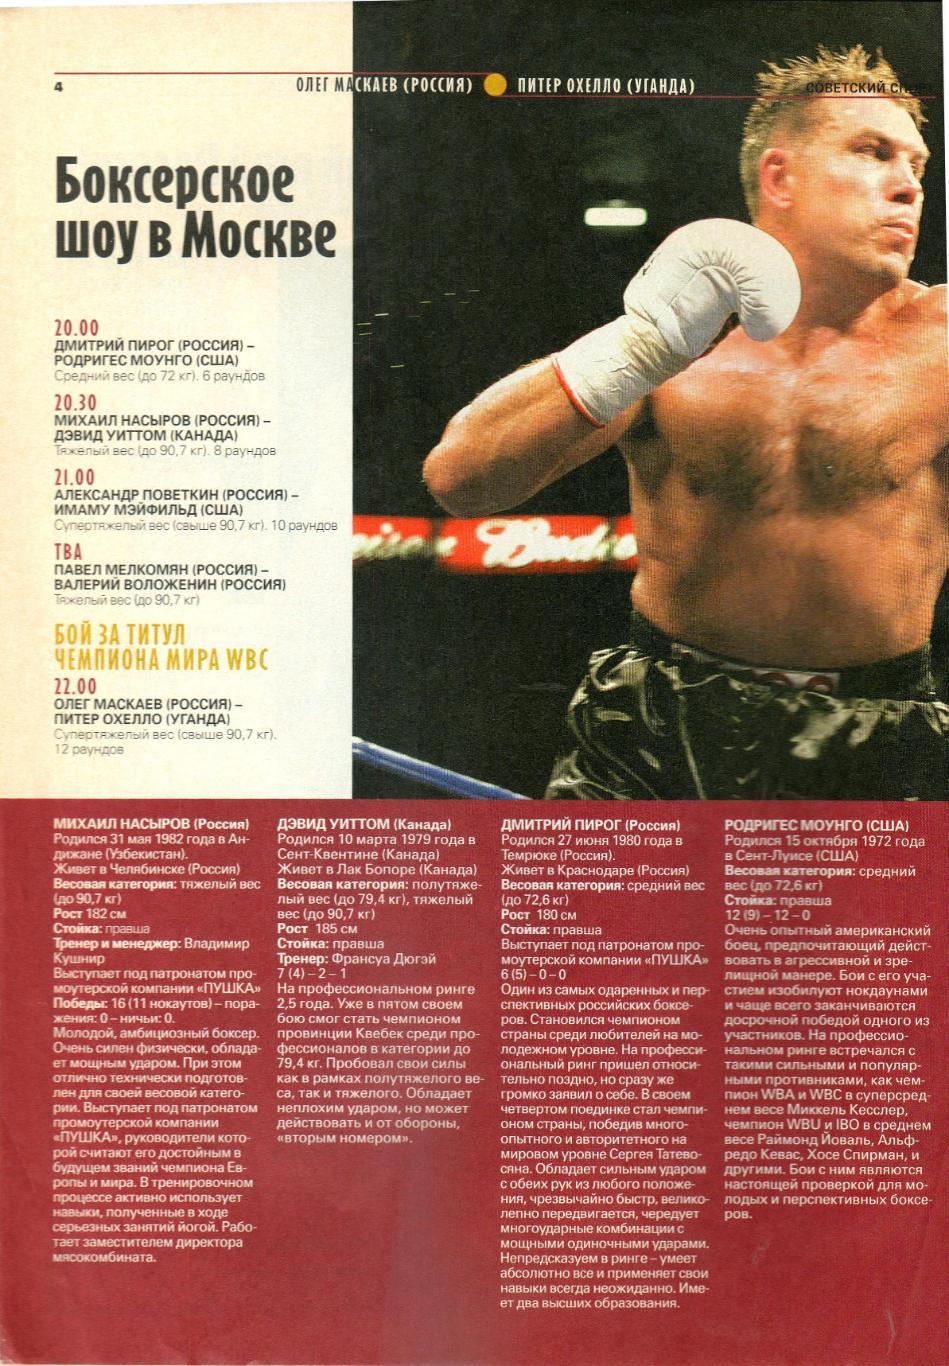 Олег Маскаев – Питер Охелло 10.12.2006 Бой за титул чемпиона WBC Свыше 90,7 кг 1